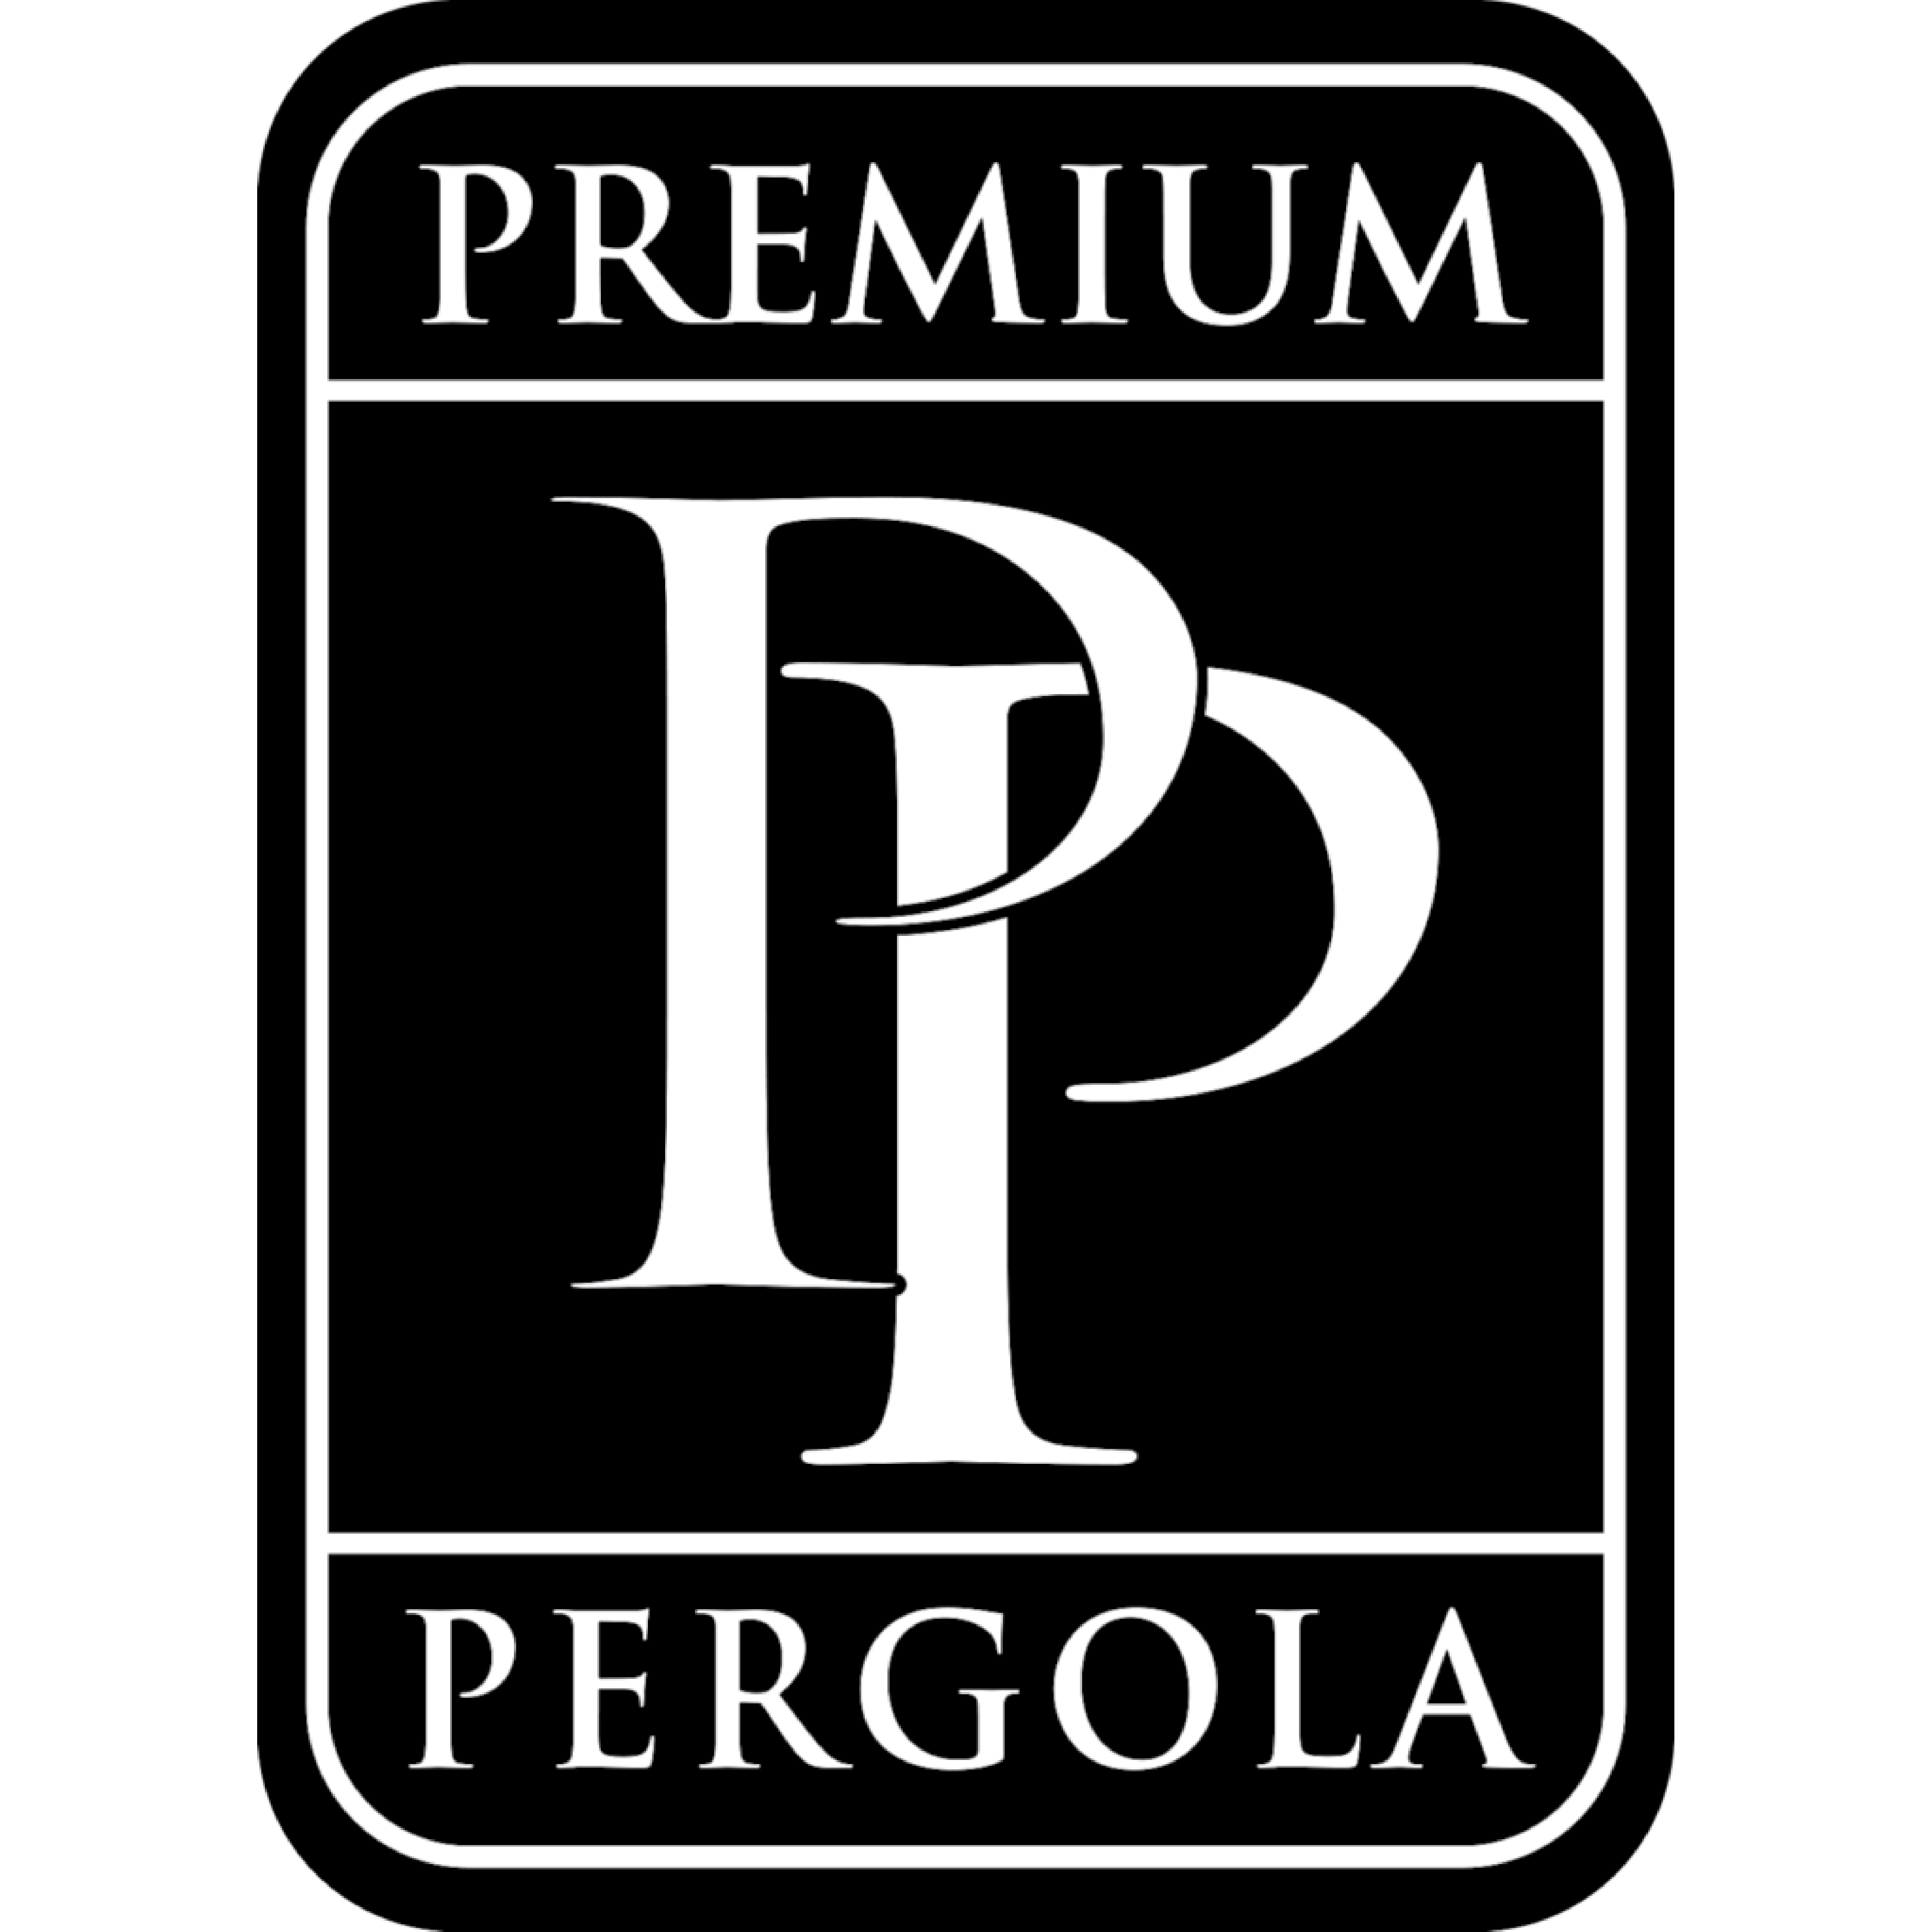 Premium Pergola - Cedarhurst, NY 11516 - (516)862-4914 | ShowMeLocal.com